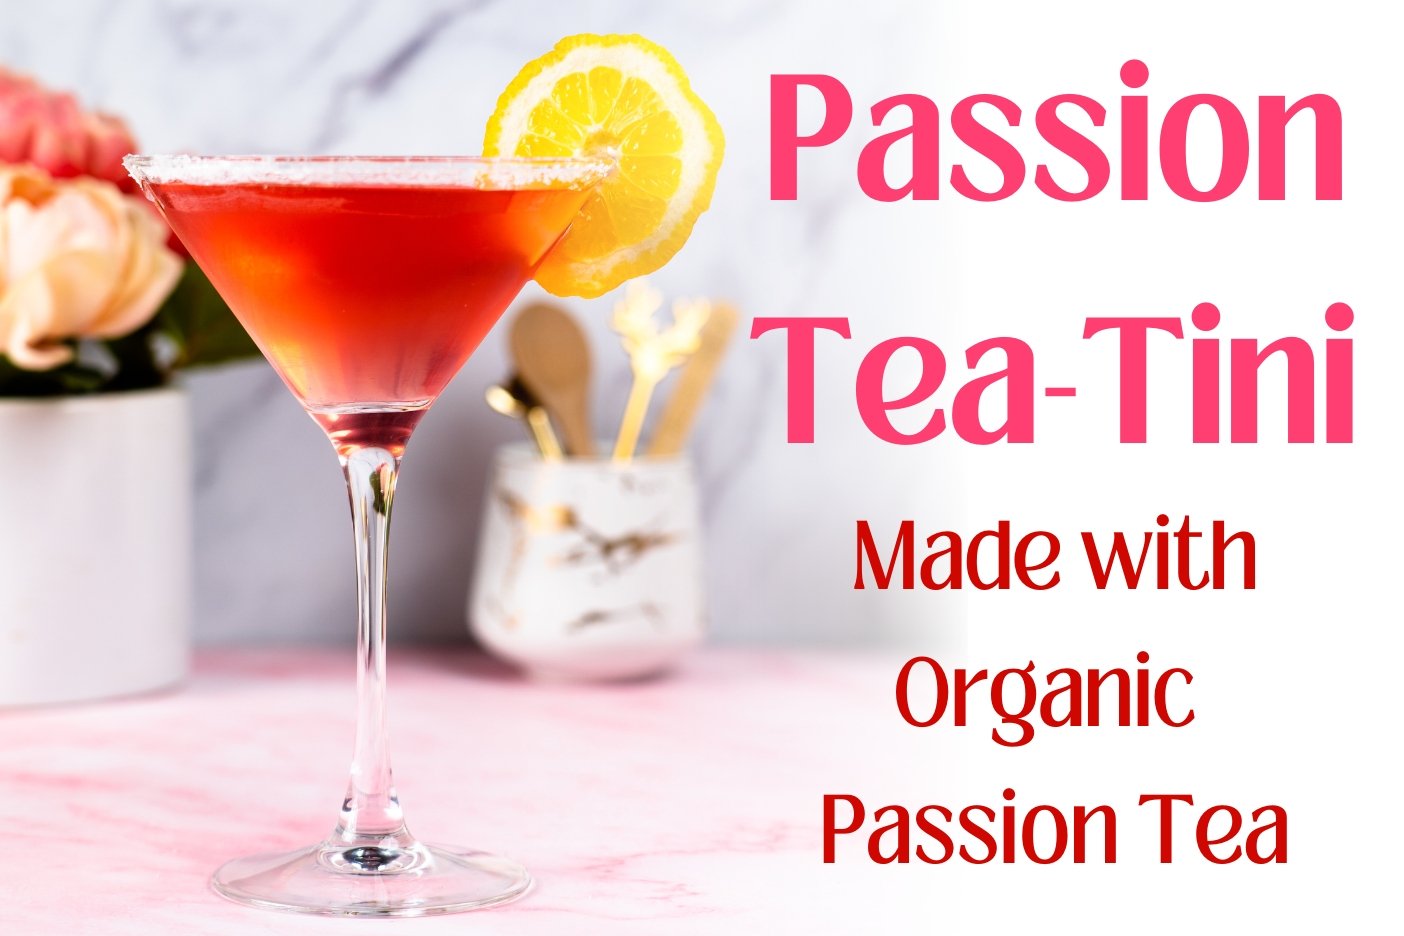 Passion Tea-Tini - Full Leaf Tea Company